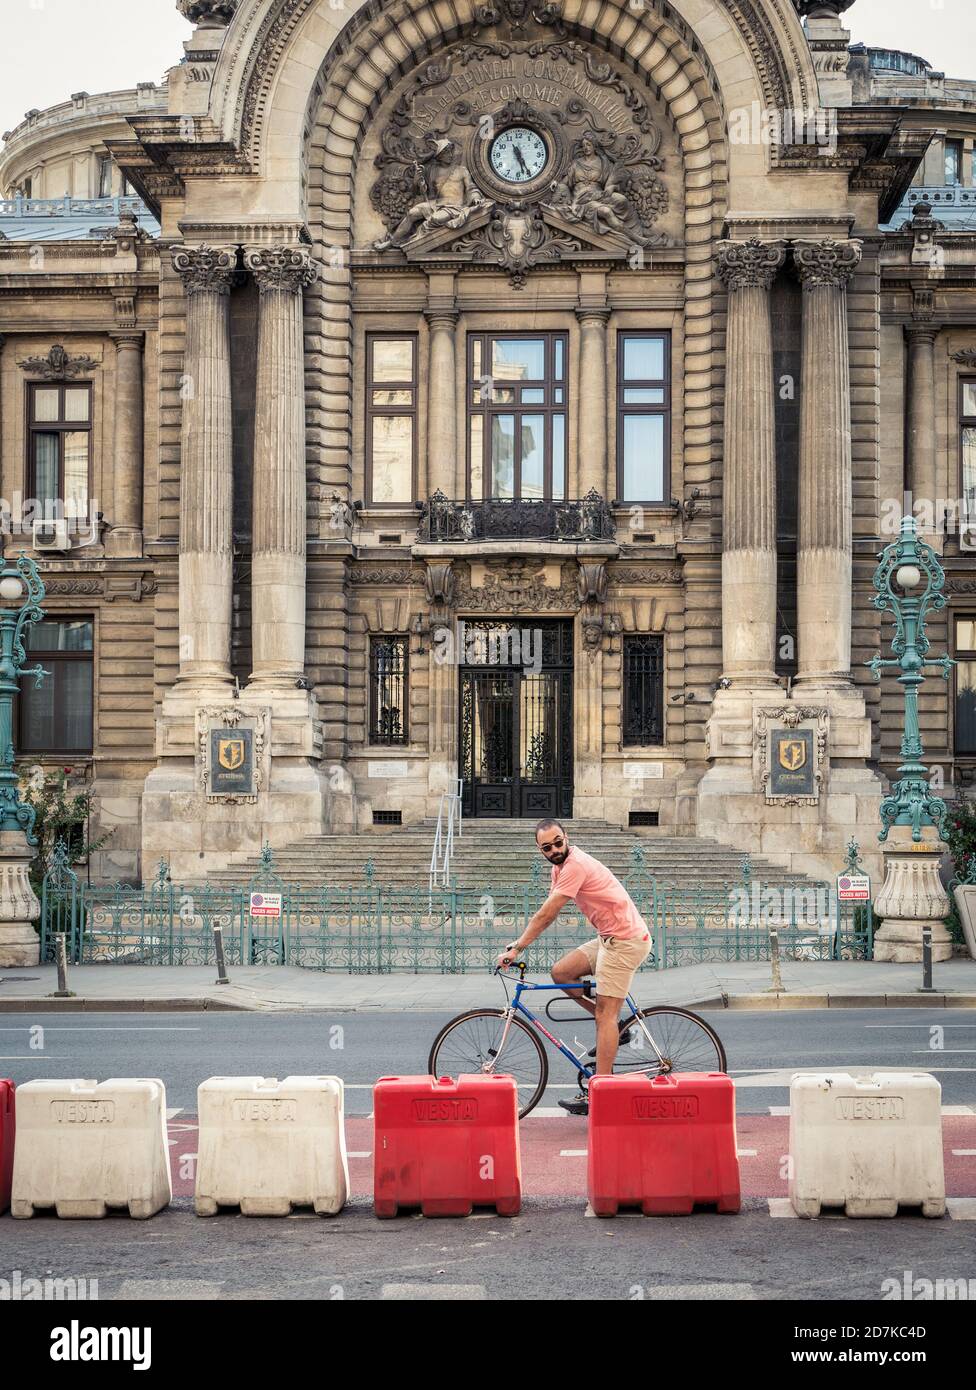 Bucarest/Rumanía - 10.02.2020: Hombre montando en bicicleta frente al Palacio de los depósitos y los envíos Foto de stock